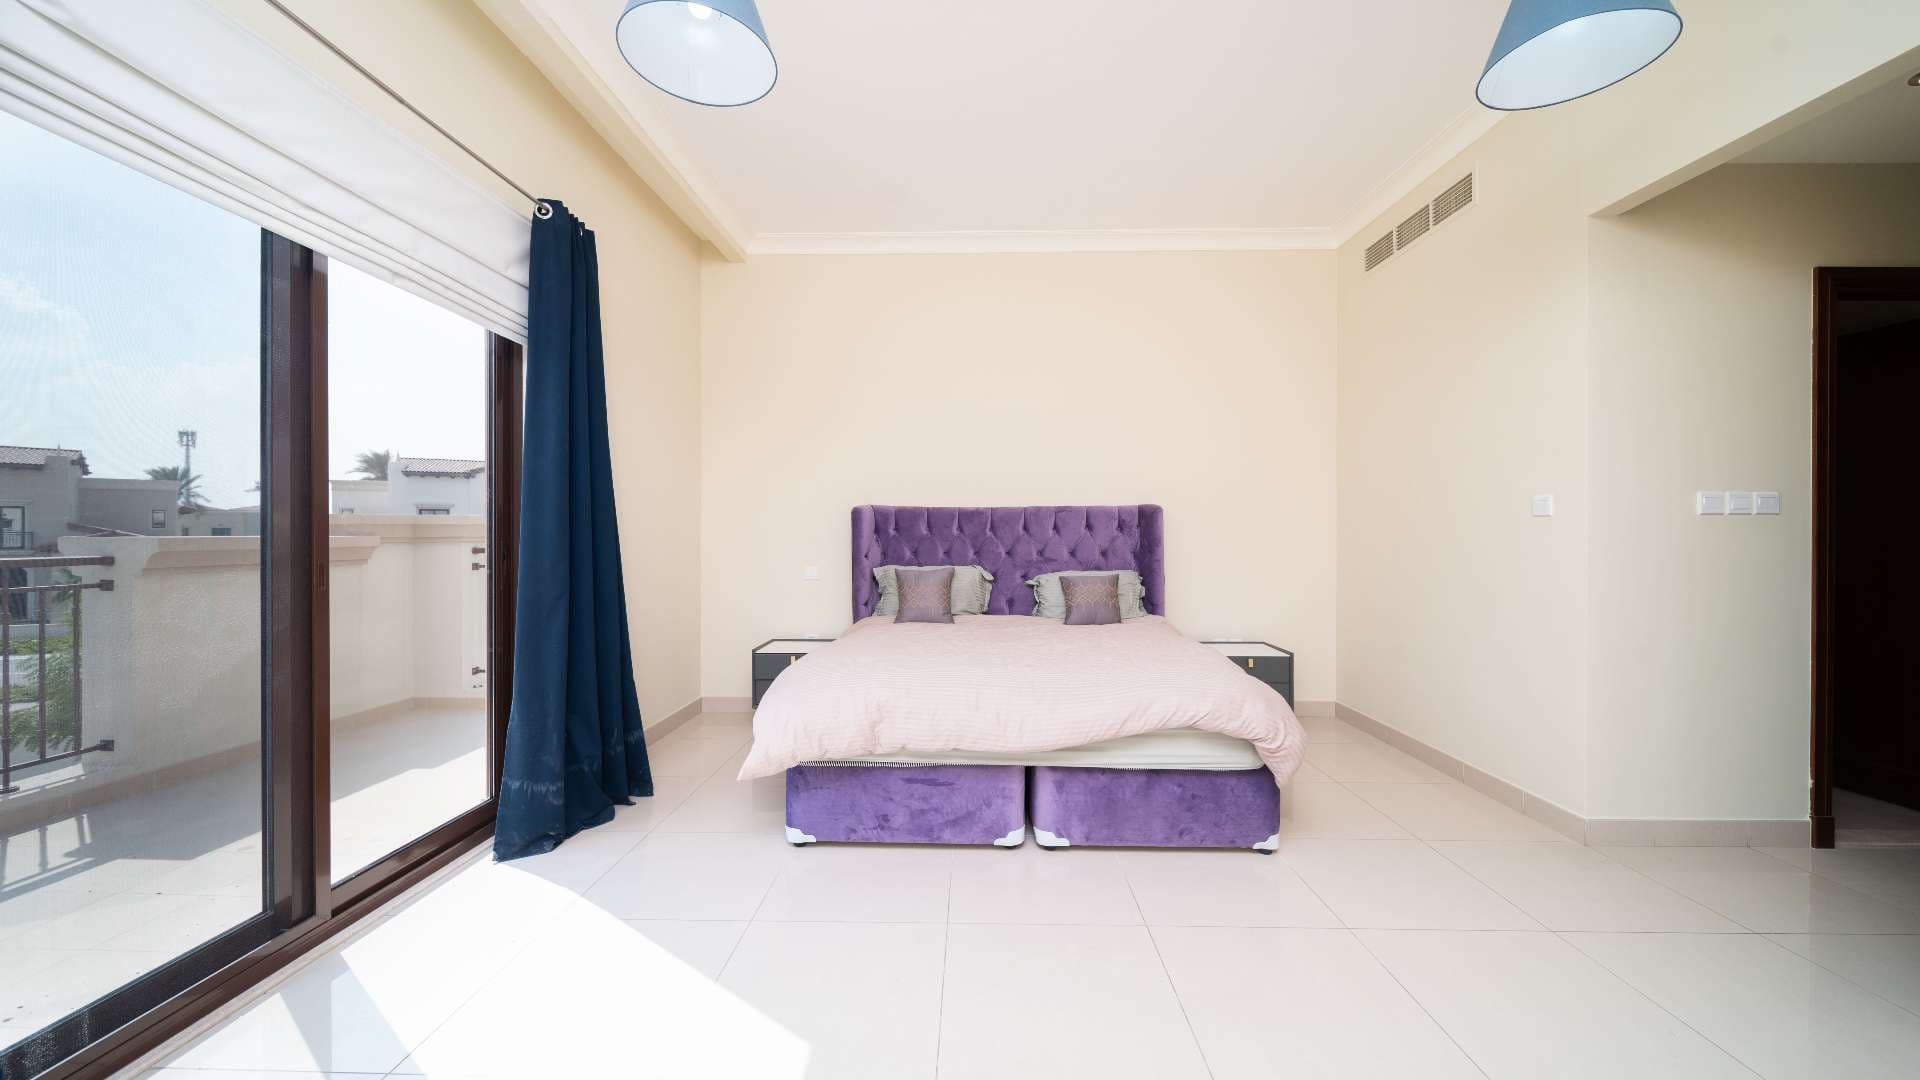 4 Bedroom Villa For Rent Rasha Lp10804 1459acc9a0c37100.jpg